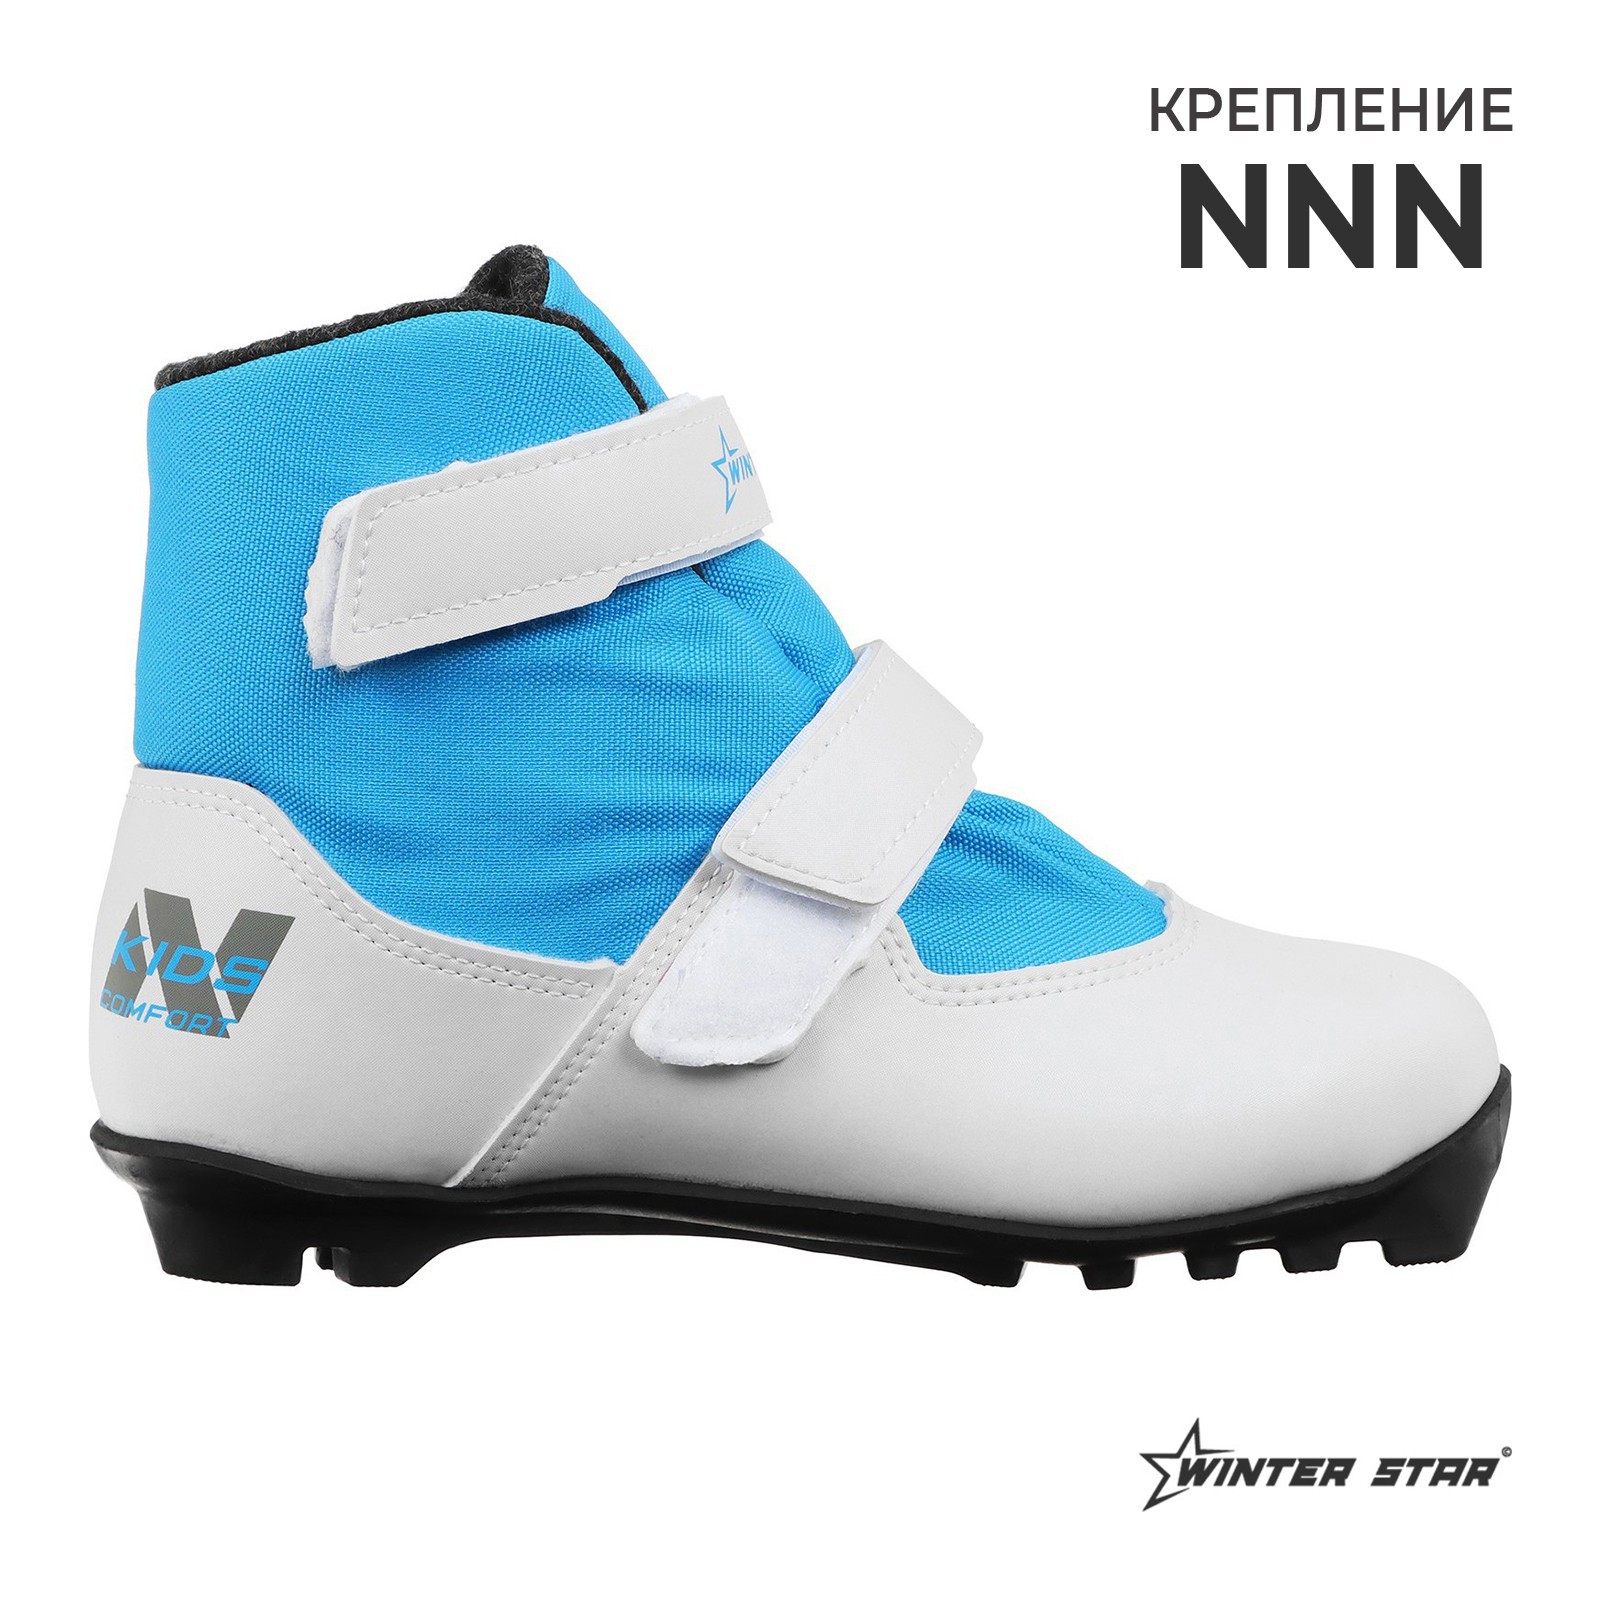 Ботинки лыжные детские Winter Star comfort kids, NNN, р. 36, цвет белый,лого синий (9796142) - Купить по цене от 2 600.00 руб.